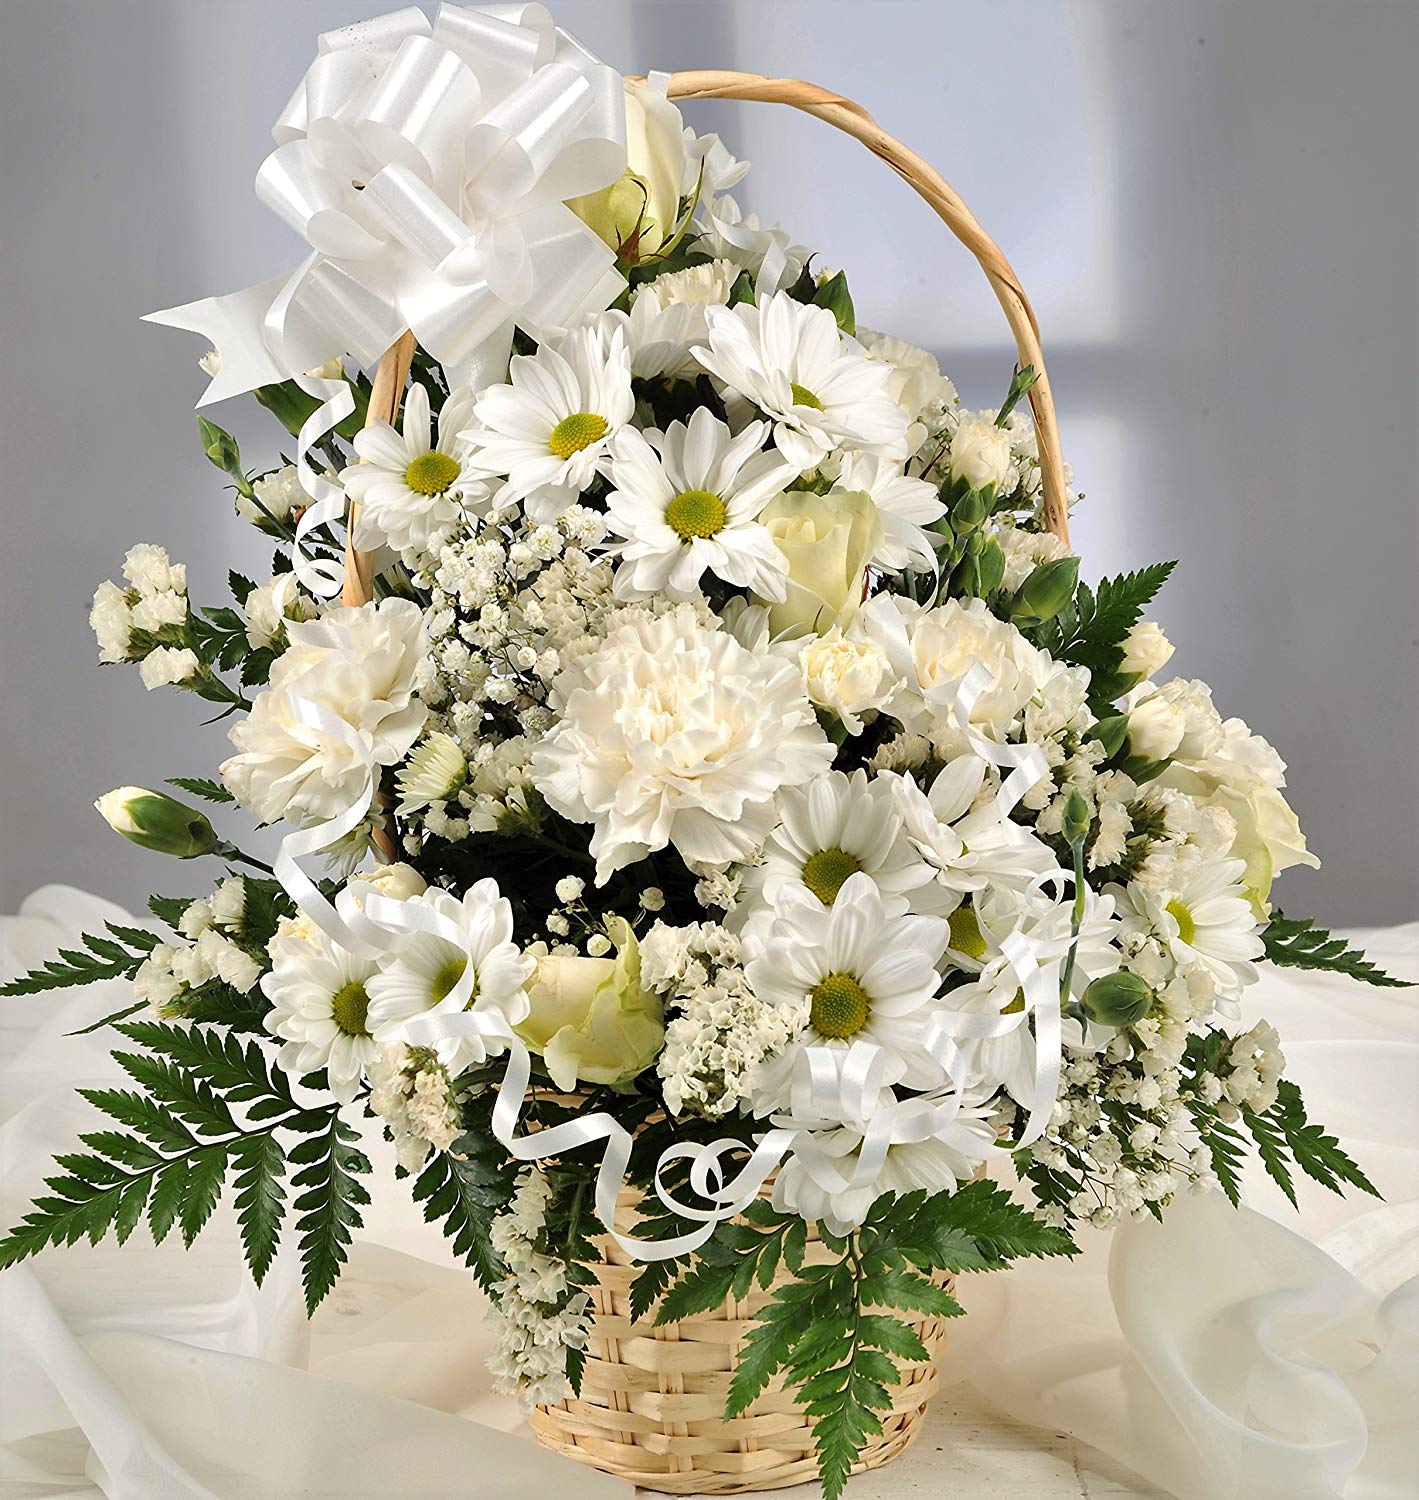 White Fresh Flower Gift Basket with Handwritten Card